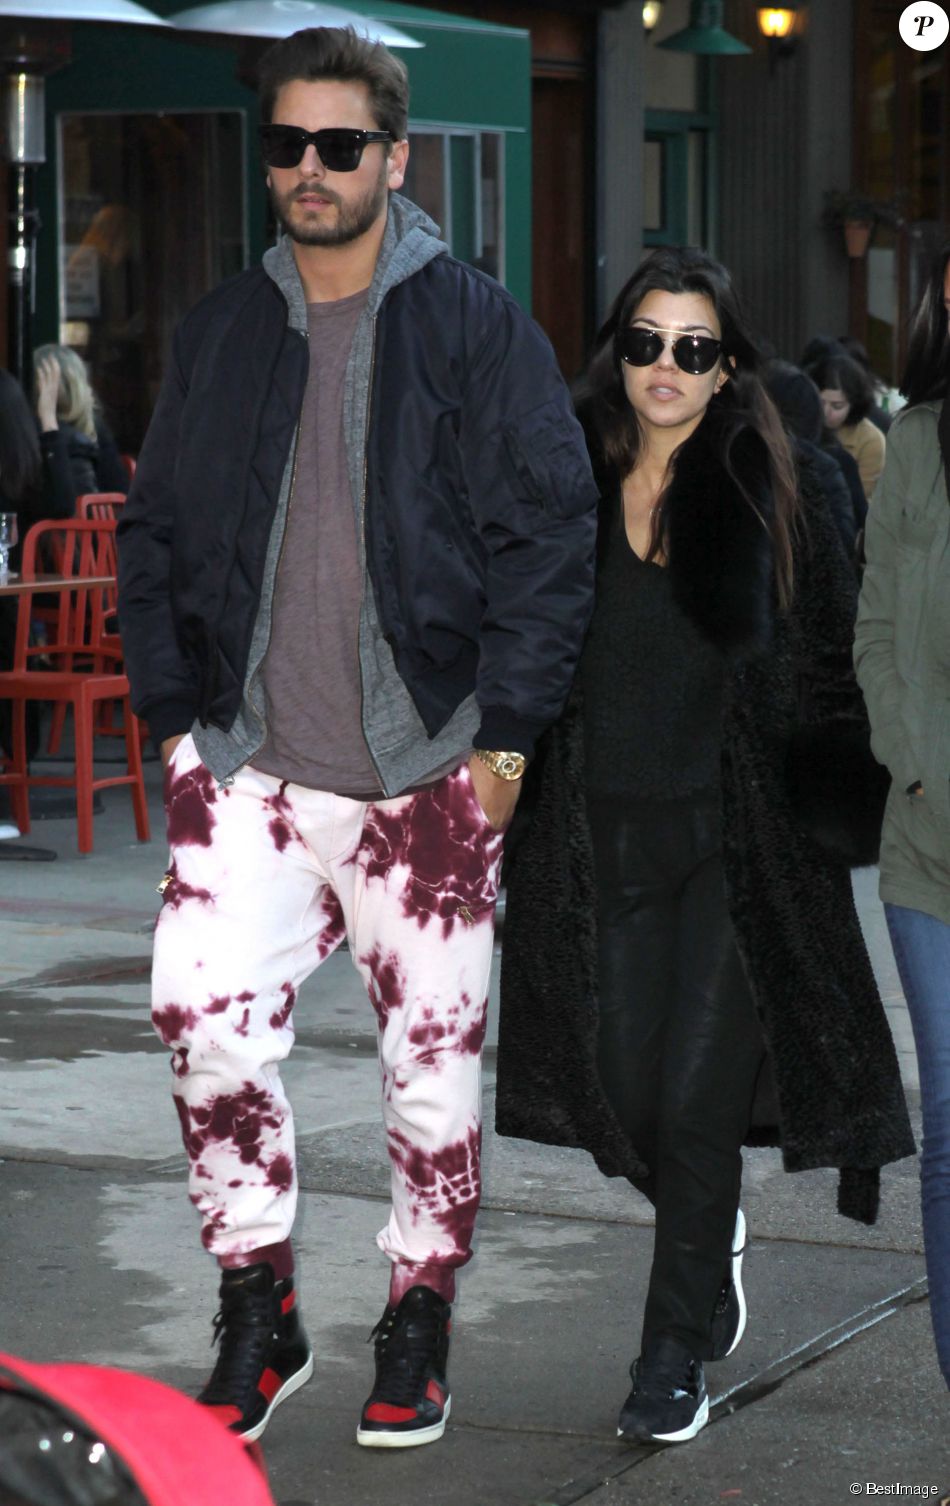  Kourtney Kardashian et Scott Disick sont all&amp;eacute;s d&amp;eacute;jeuner &amp;agrave; New York, Le 22 f&amp;eacute;vrier 2014&amp;nbsp;  